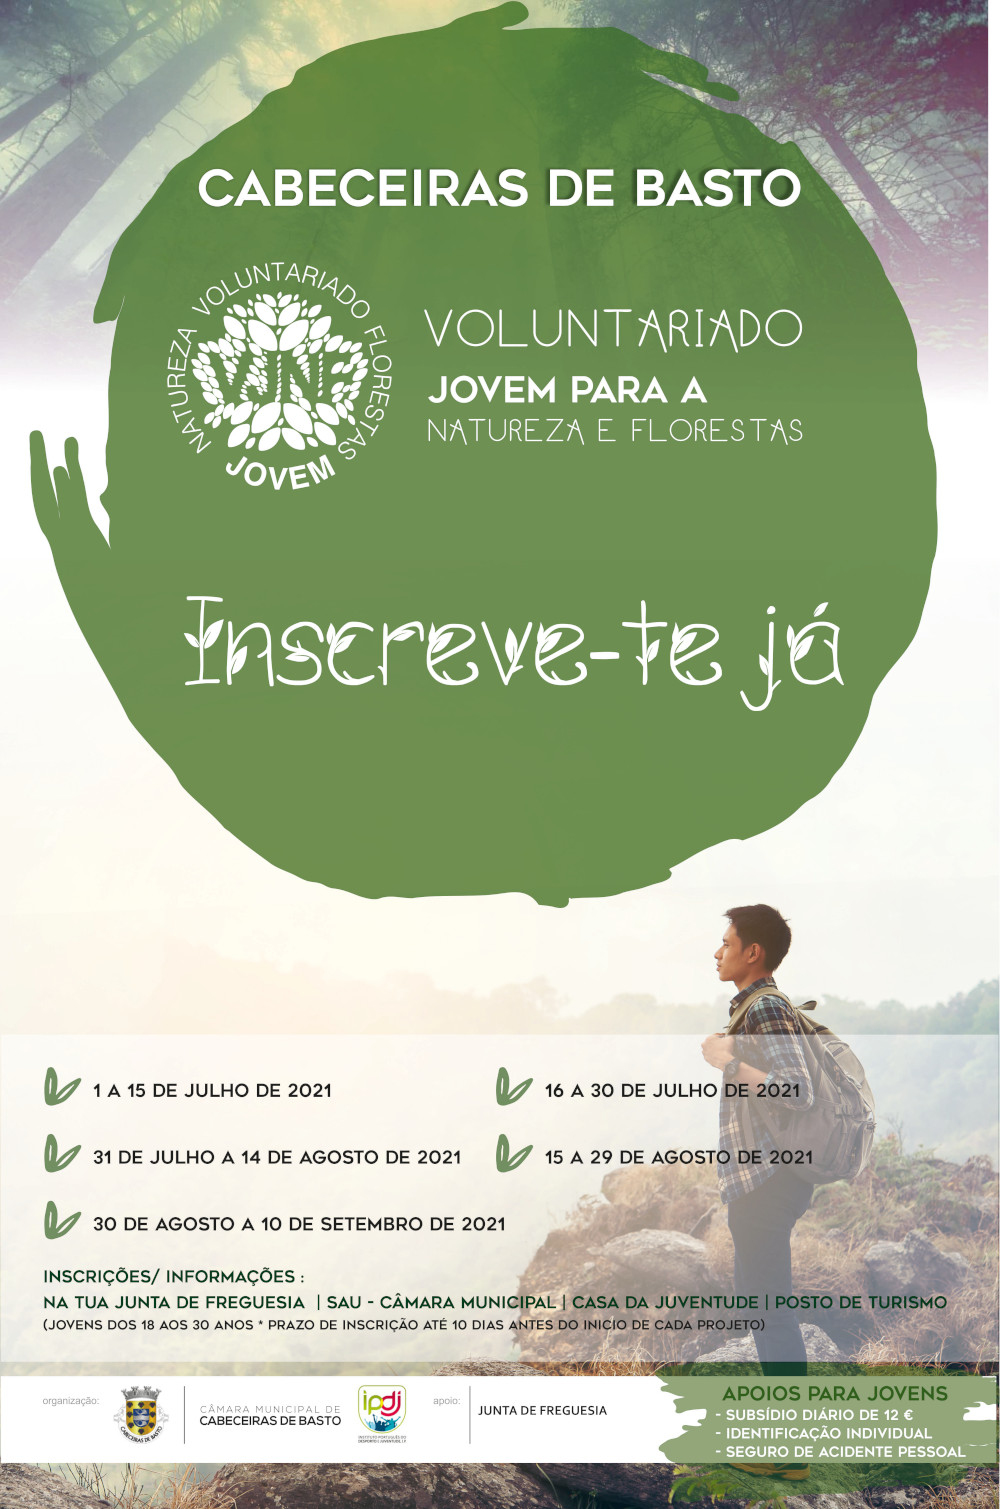 Voluntariado Jovem para a Natureza e Florestas tem abertas inscrições